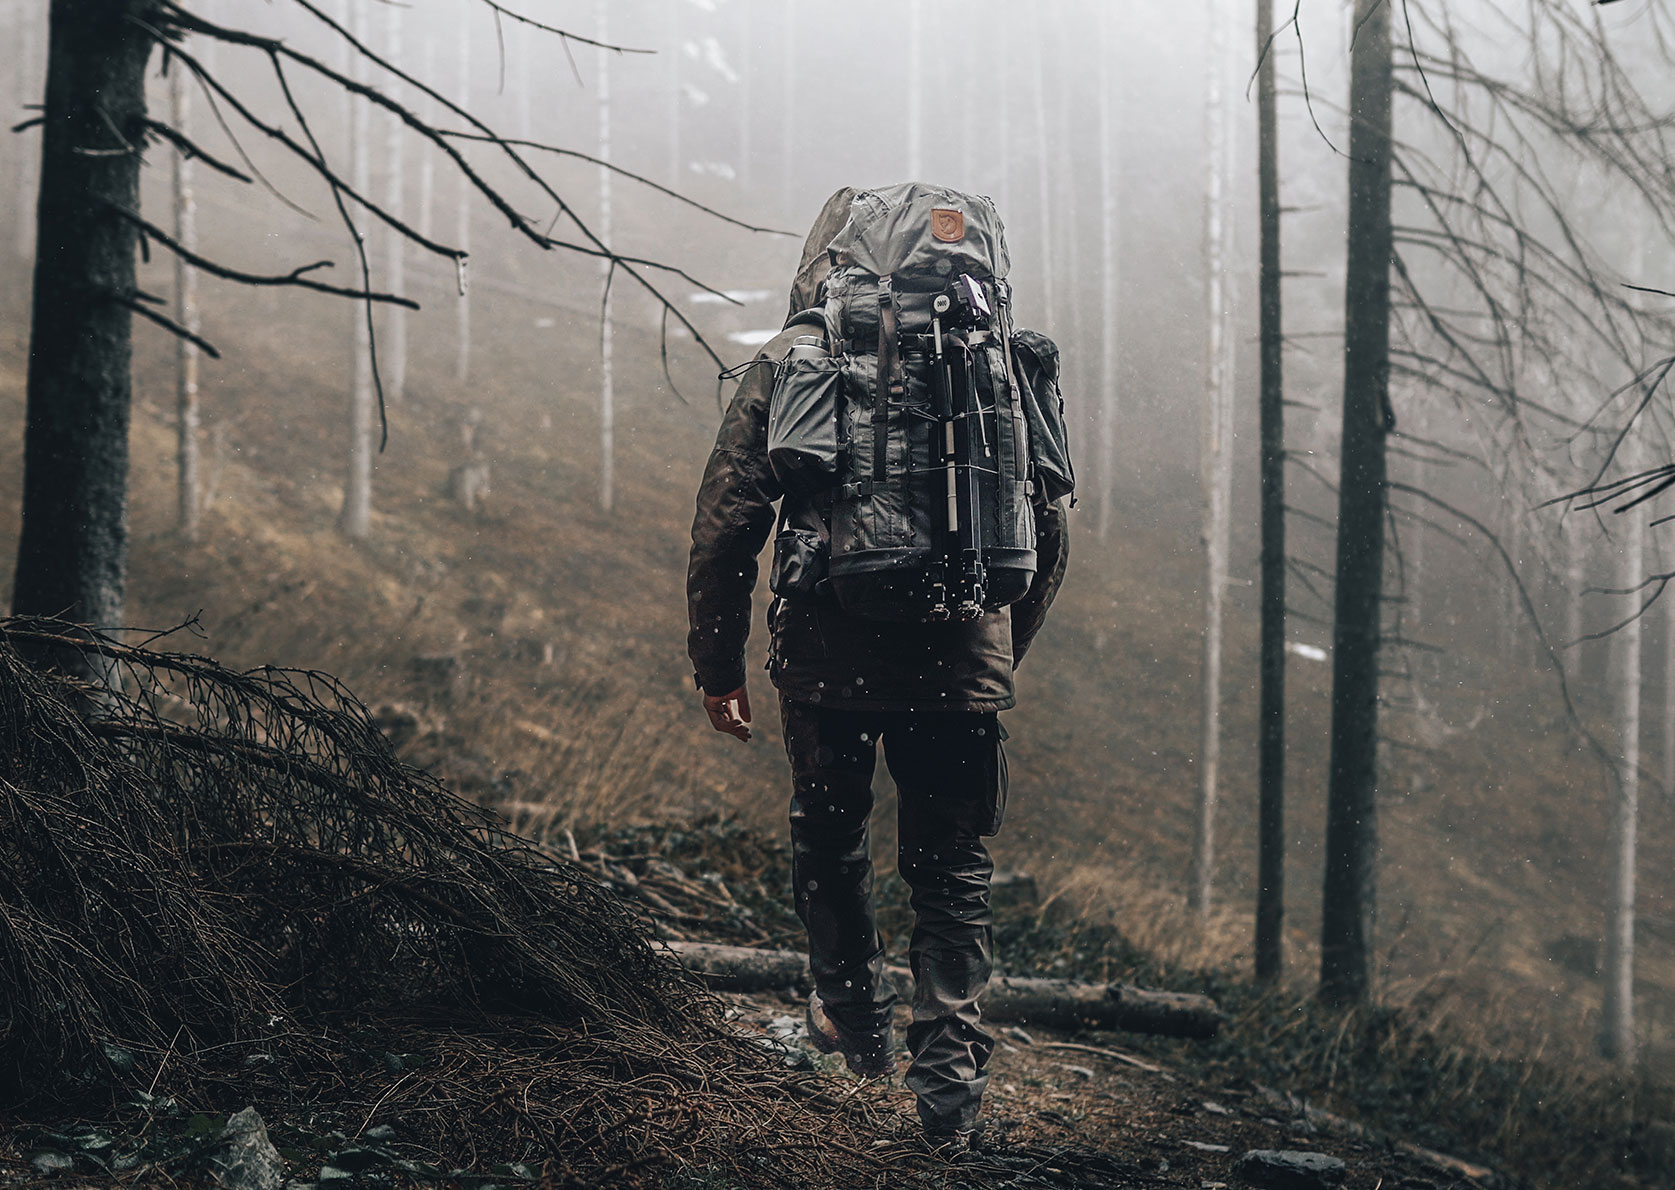 Alex Wander geht beim Bushcrafting mit großem Rucksack durch einen nebligen Wald